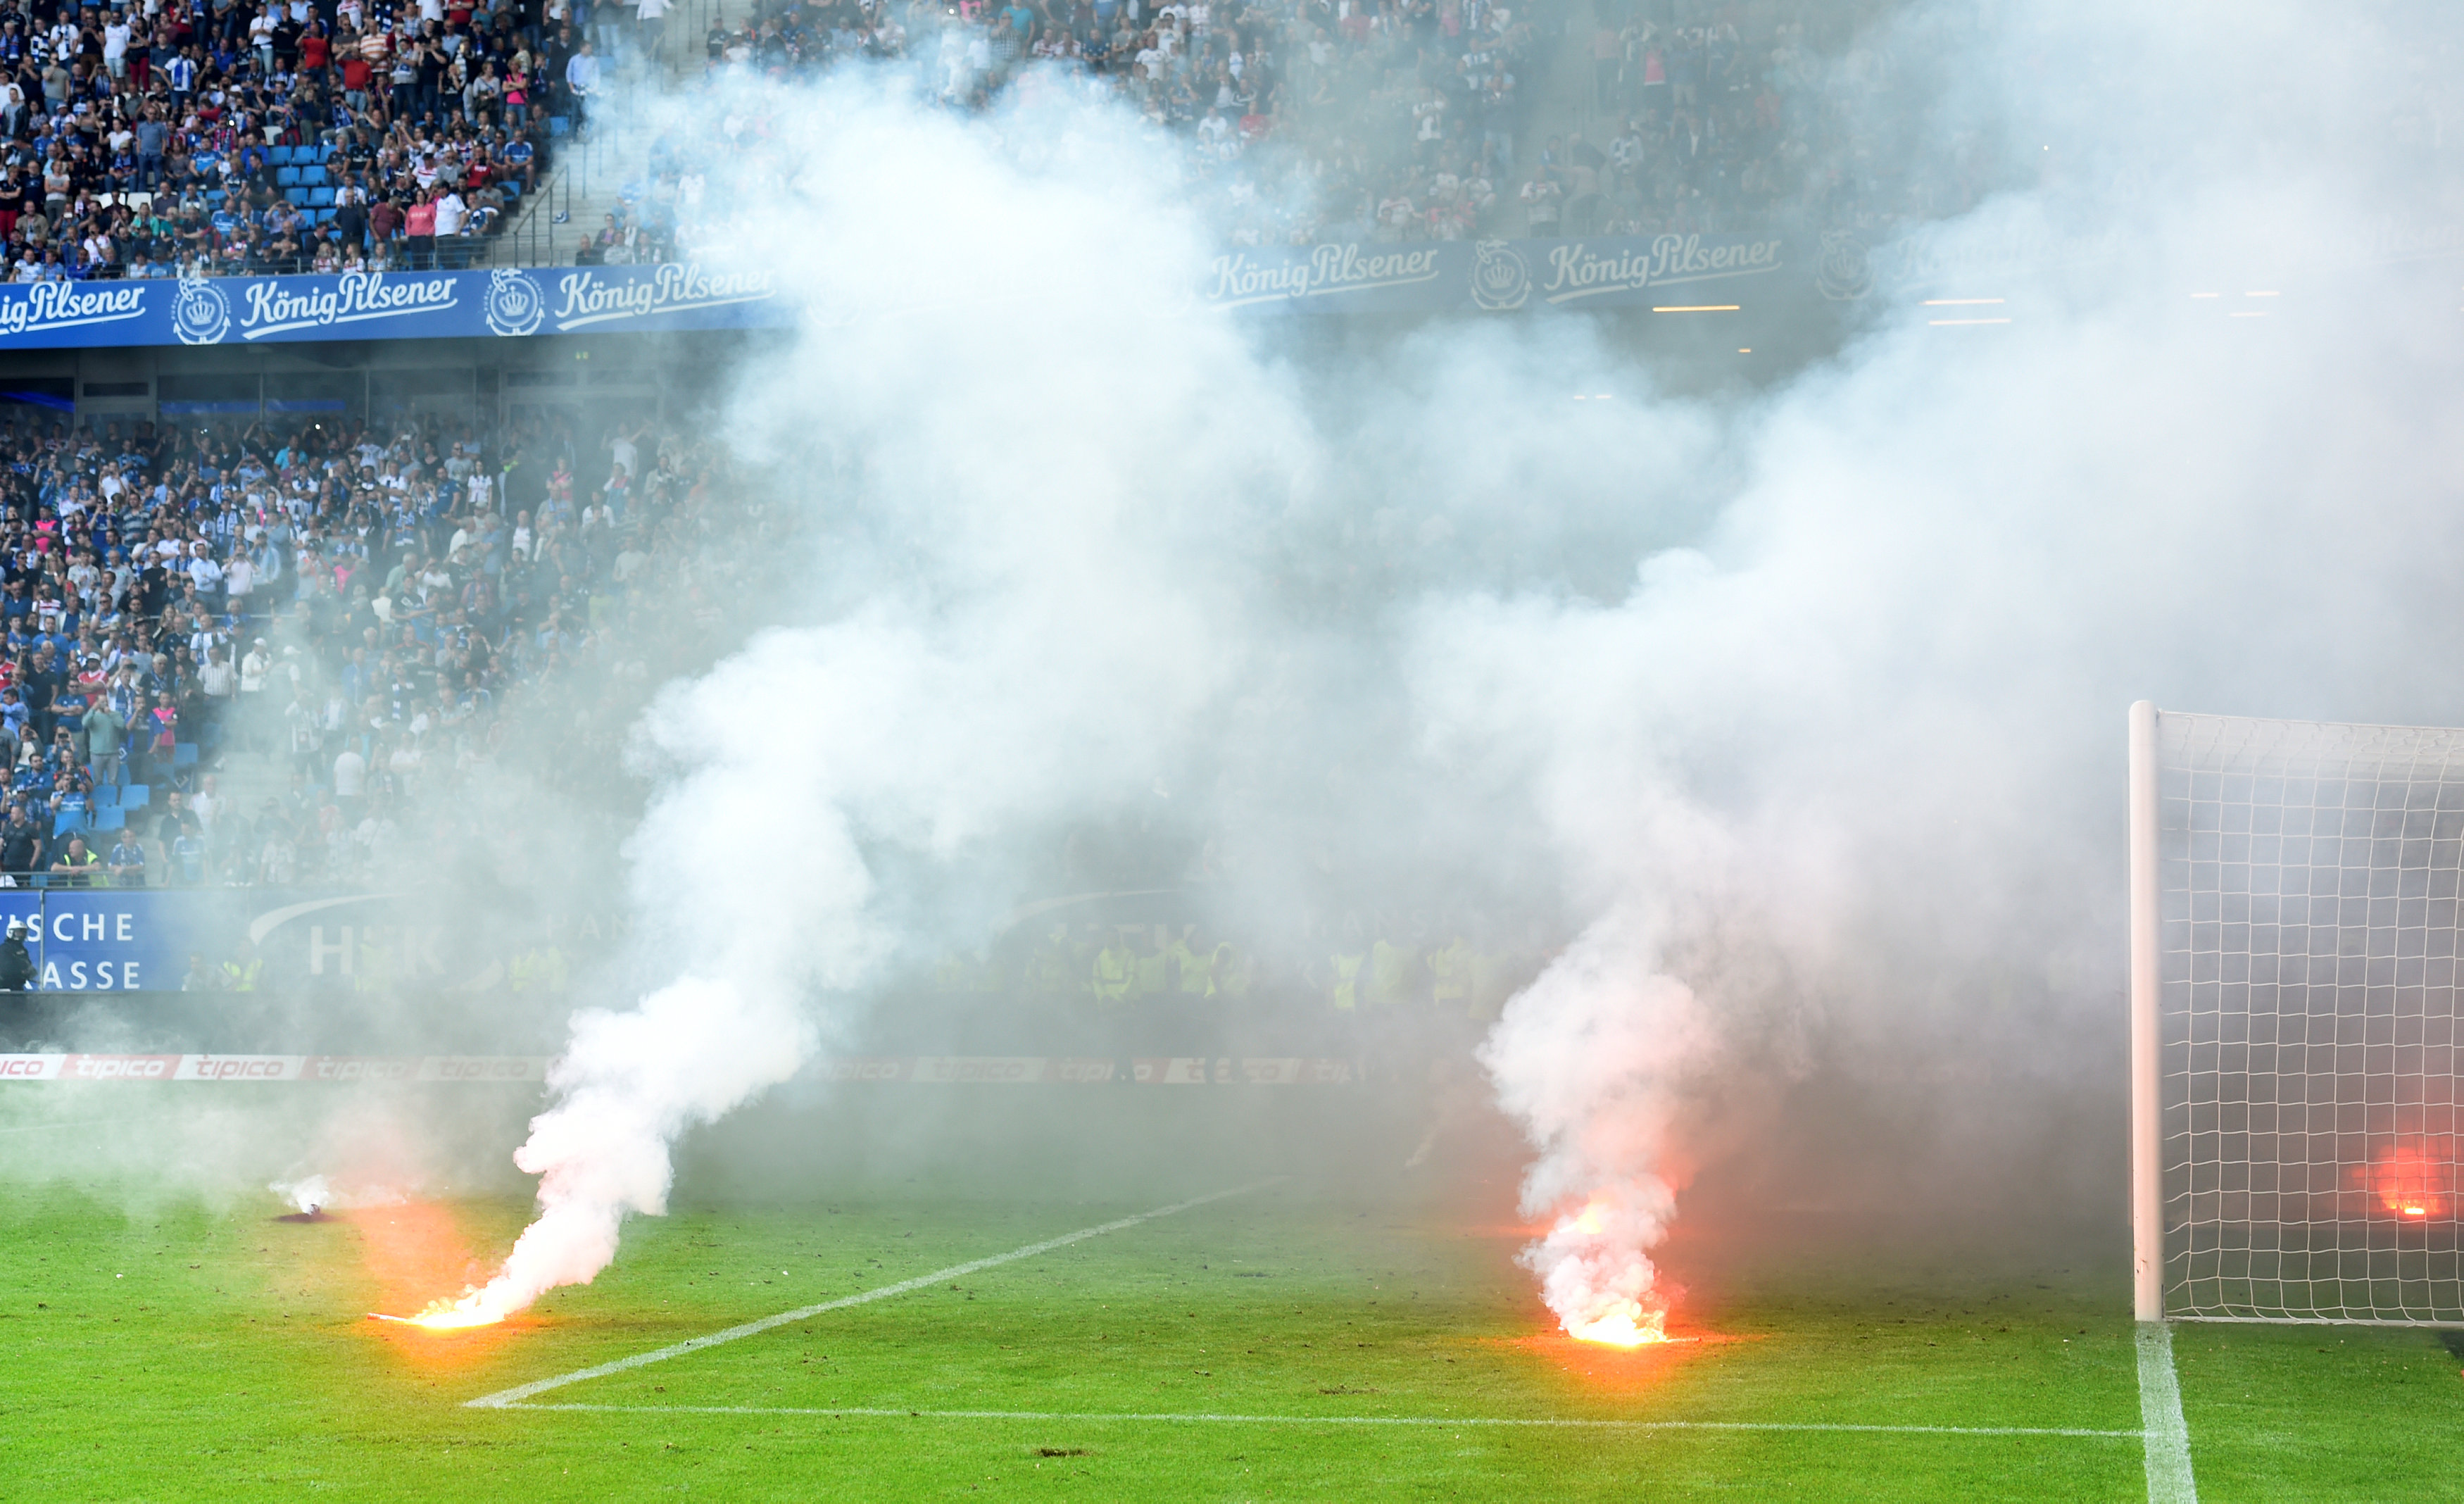 Các CĐV Hamburger ném pháo sáng xuống sân, khiến trận đấu bị hoãn ở những phút đấu thêm giờ. Ảnh: REUTERS